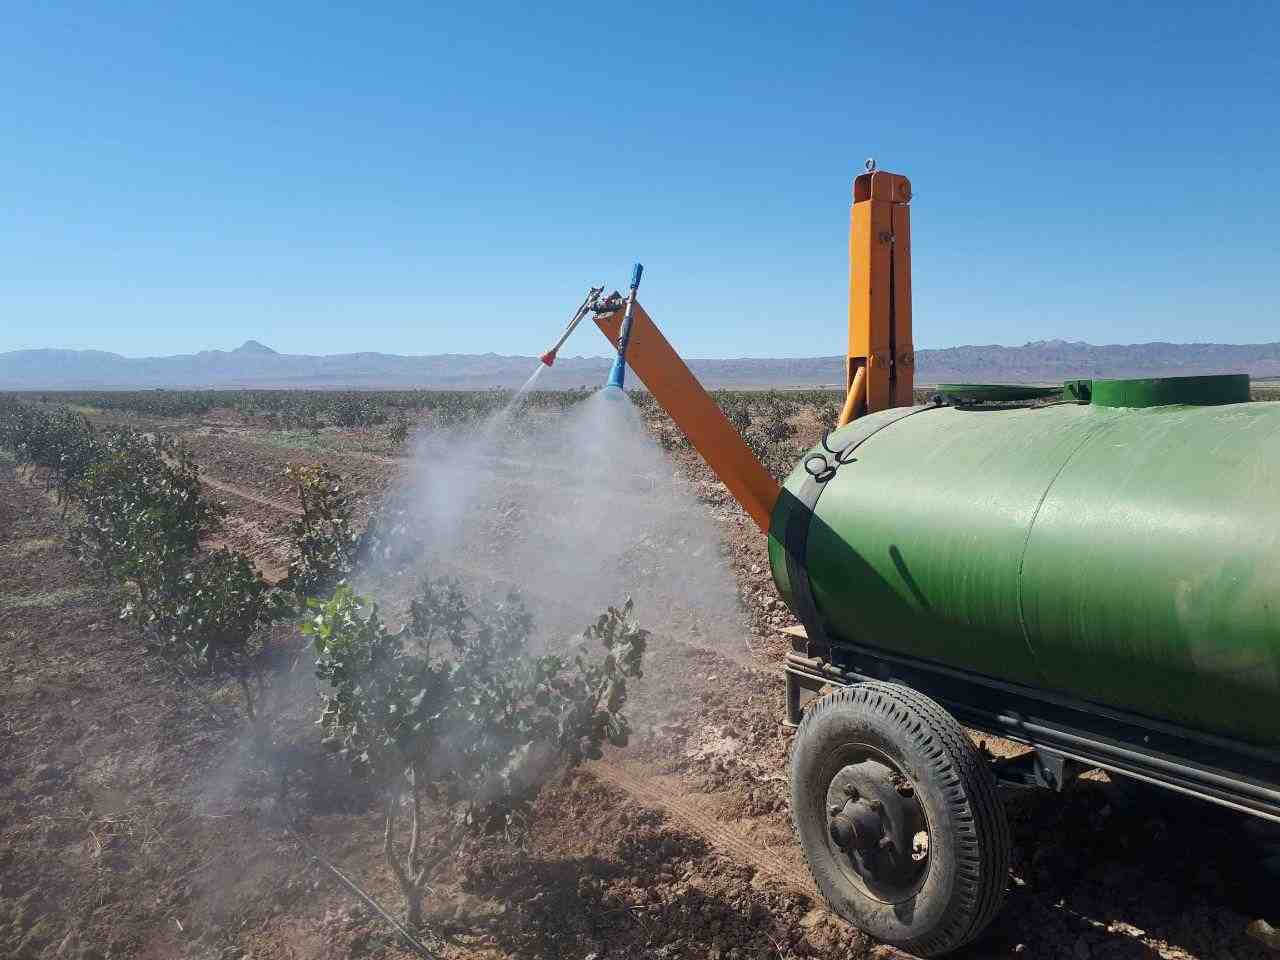 Alerte sur le marché européen pour la pistache iranienne : dangers d'une pulvérisation excessive dans les vergers de pistachiers